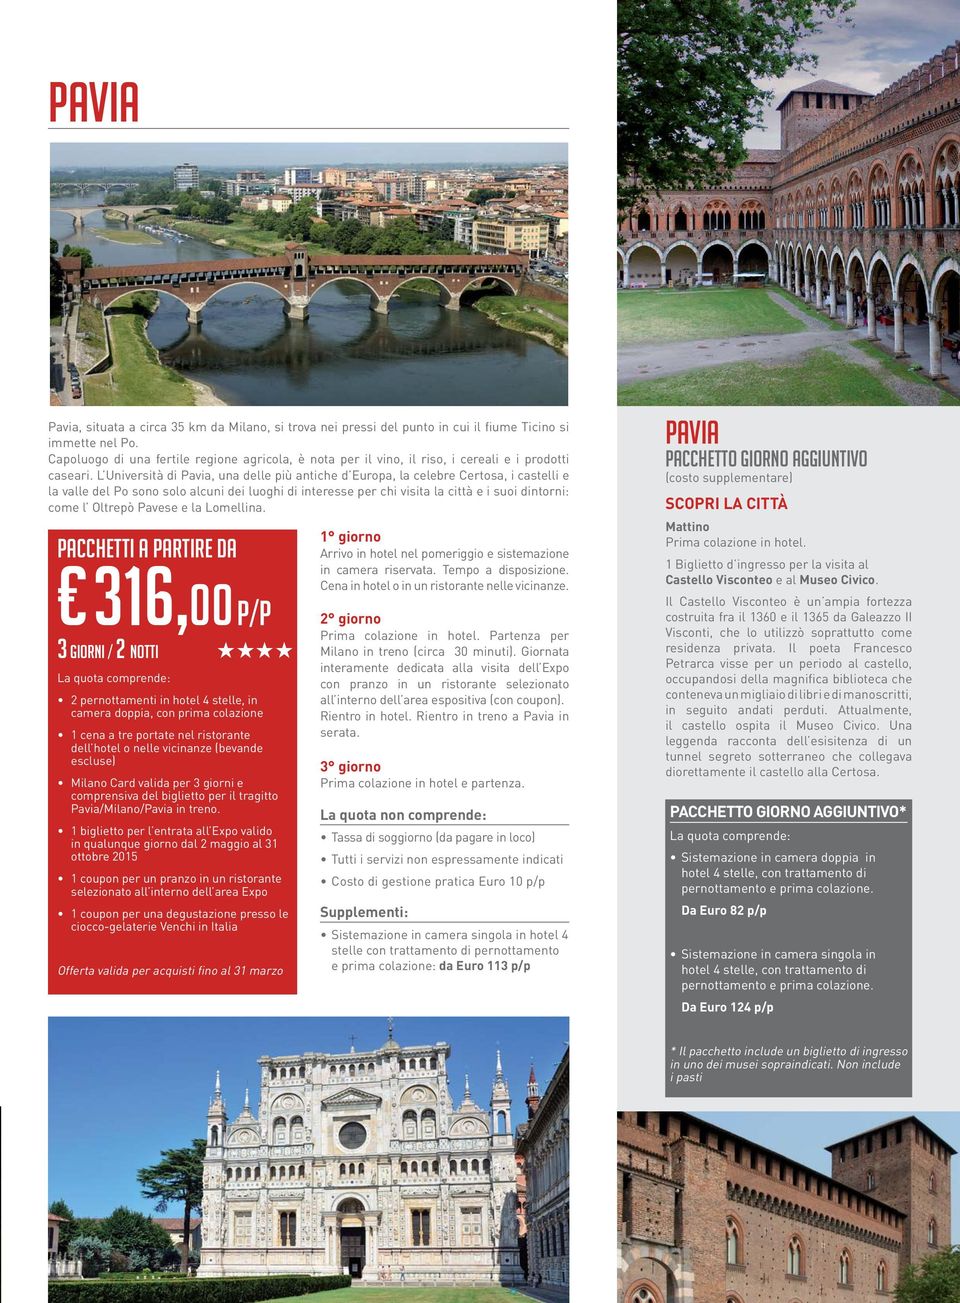 L Università di Pavia, una delle più antiche d Europa, la celebre Certosa, i castelli e la valle del Po sono solo alcuni dei luoghi di interesse per chi visita la città e i suoi dintorni: come l